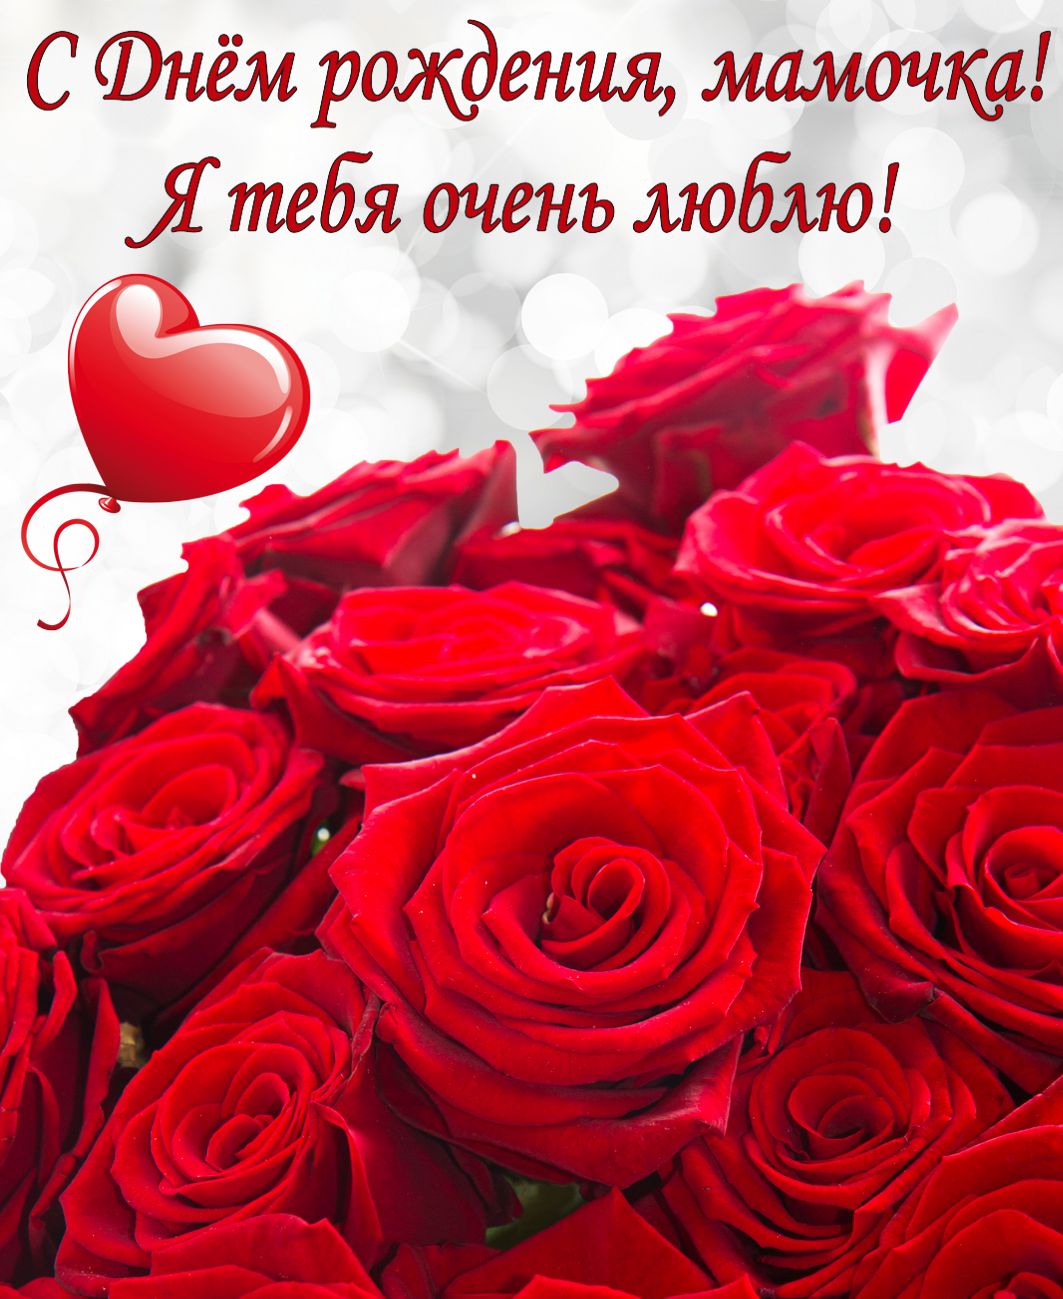 Красные розы на День рождения мамочке